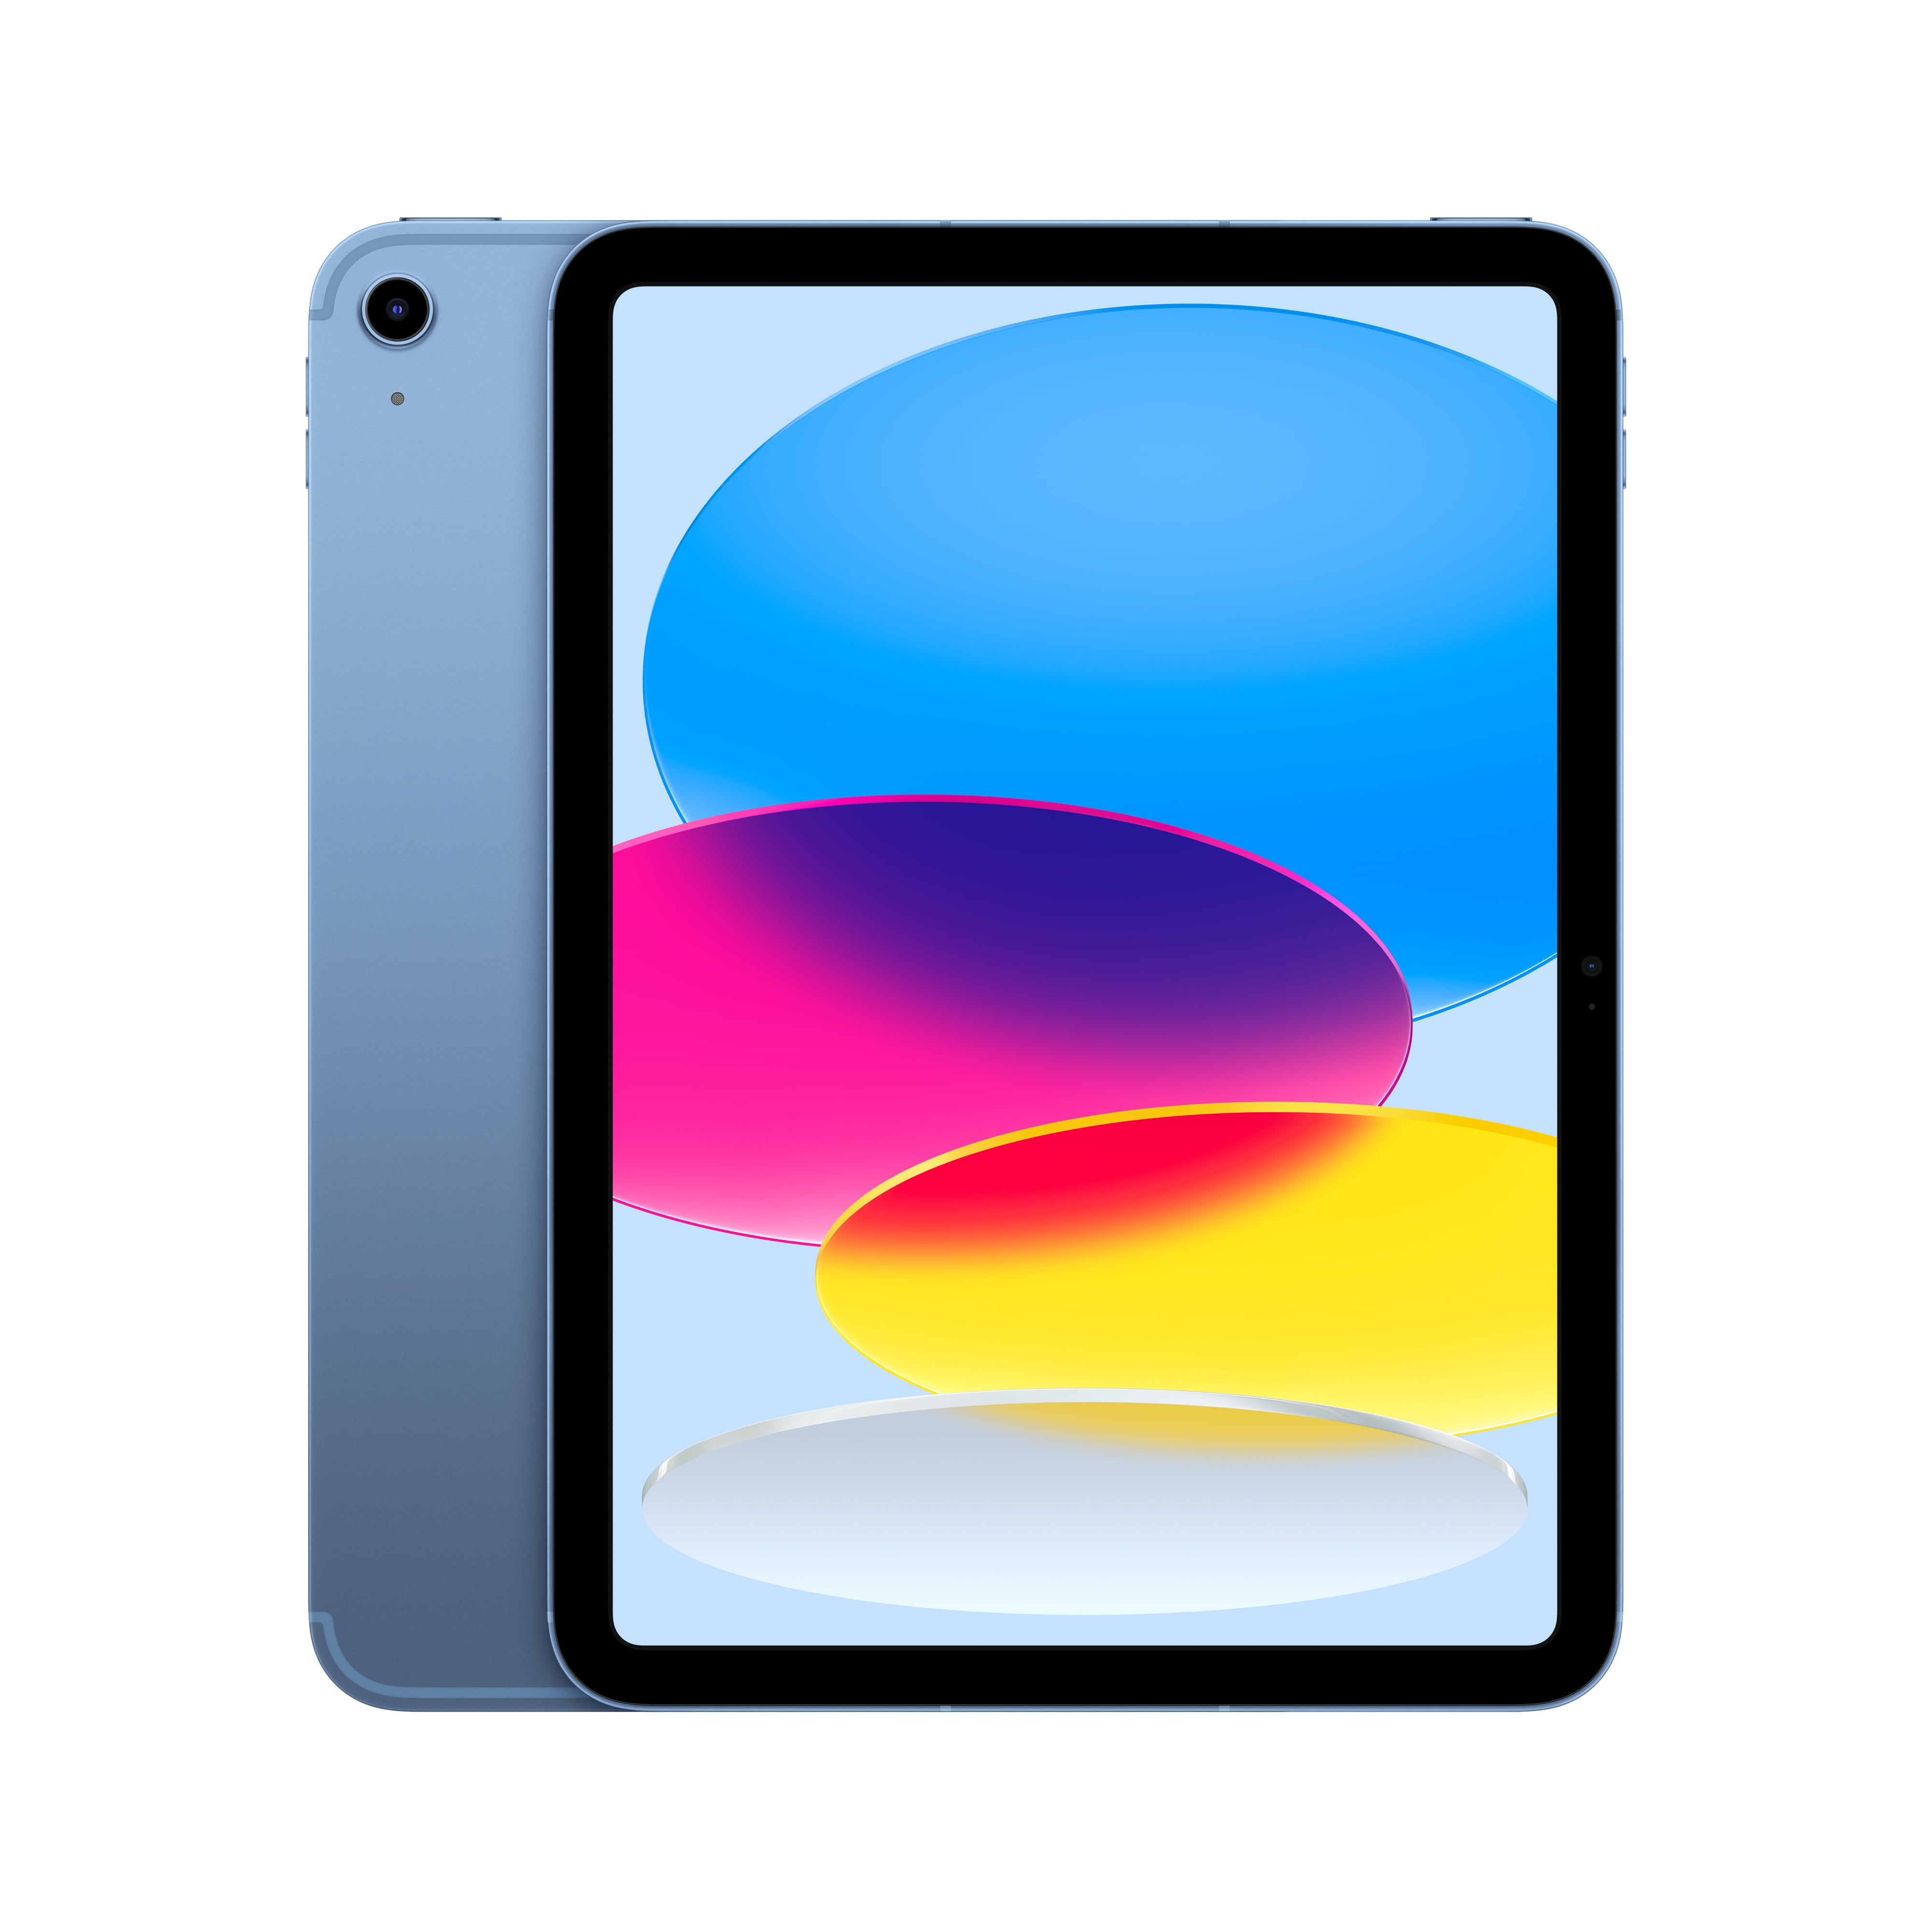 Cellular Generation) iPad 2022 Wi-Fi Apple - Silver 64GB + 10.9-inch (10th